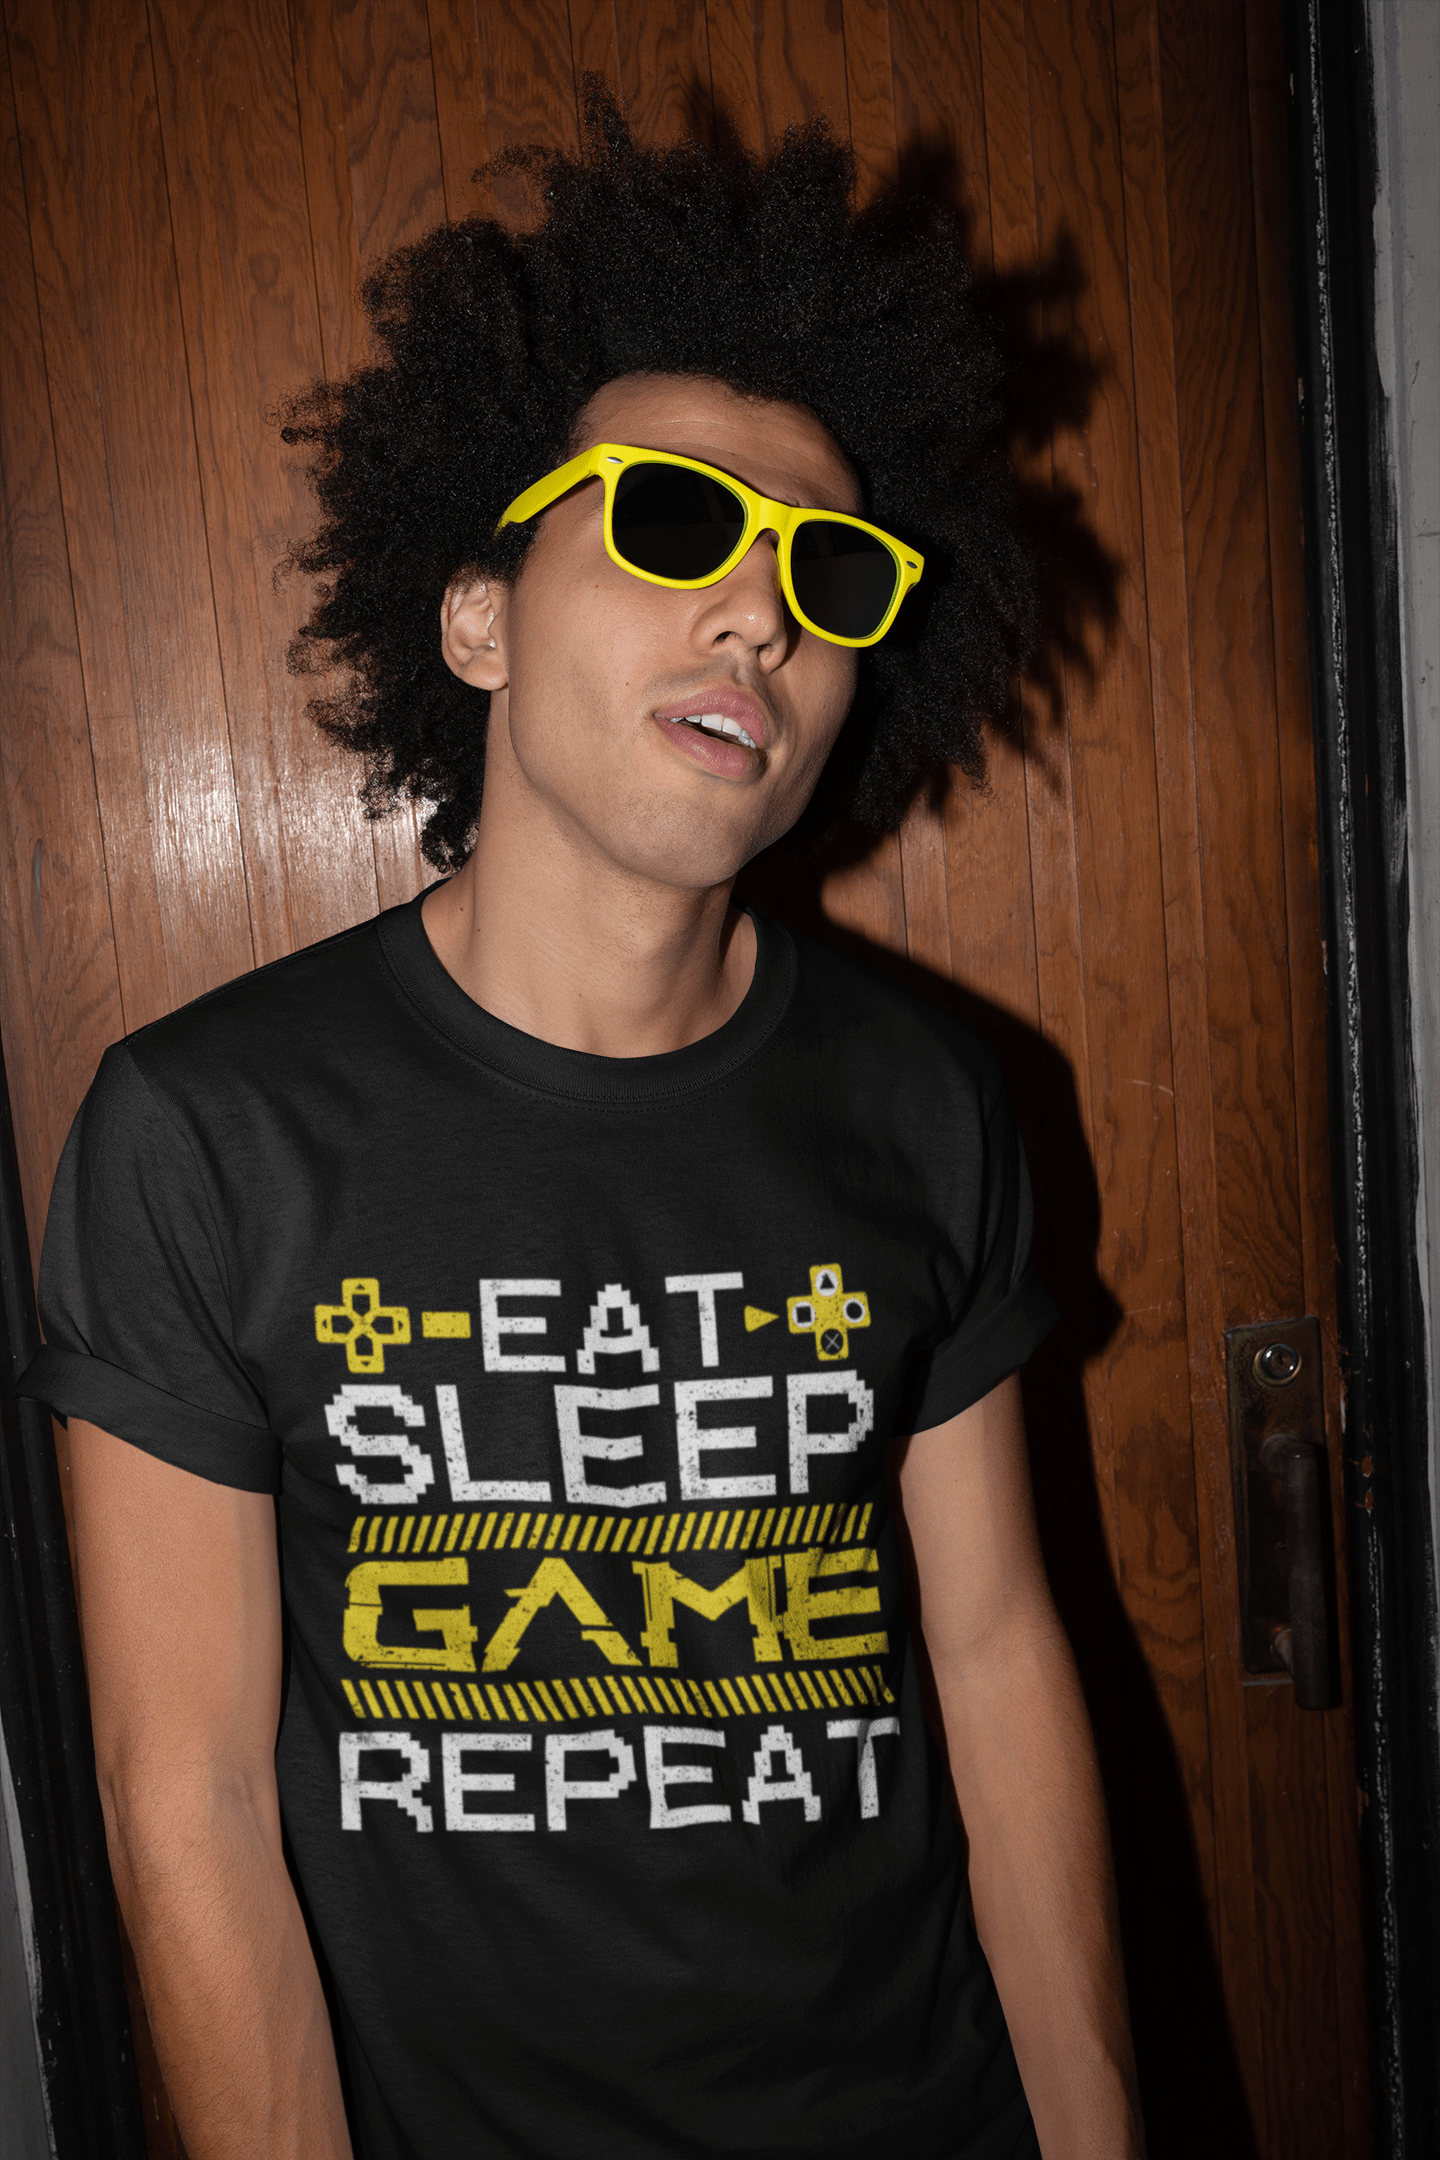 ULTRABASIC Men's T-Shirt Eat Sleep Game Repeat - Gaming Funny Joke - Gift for Gamers